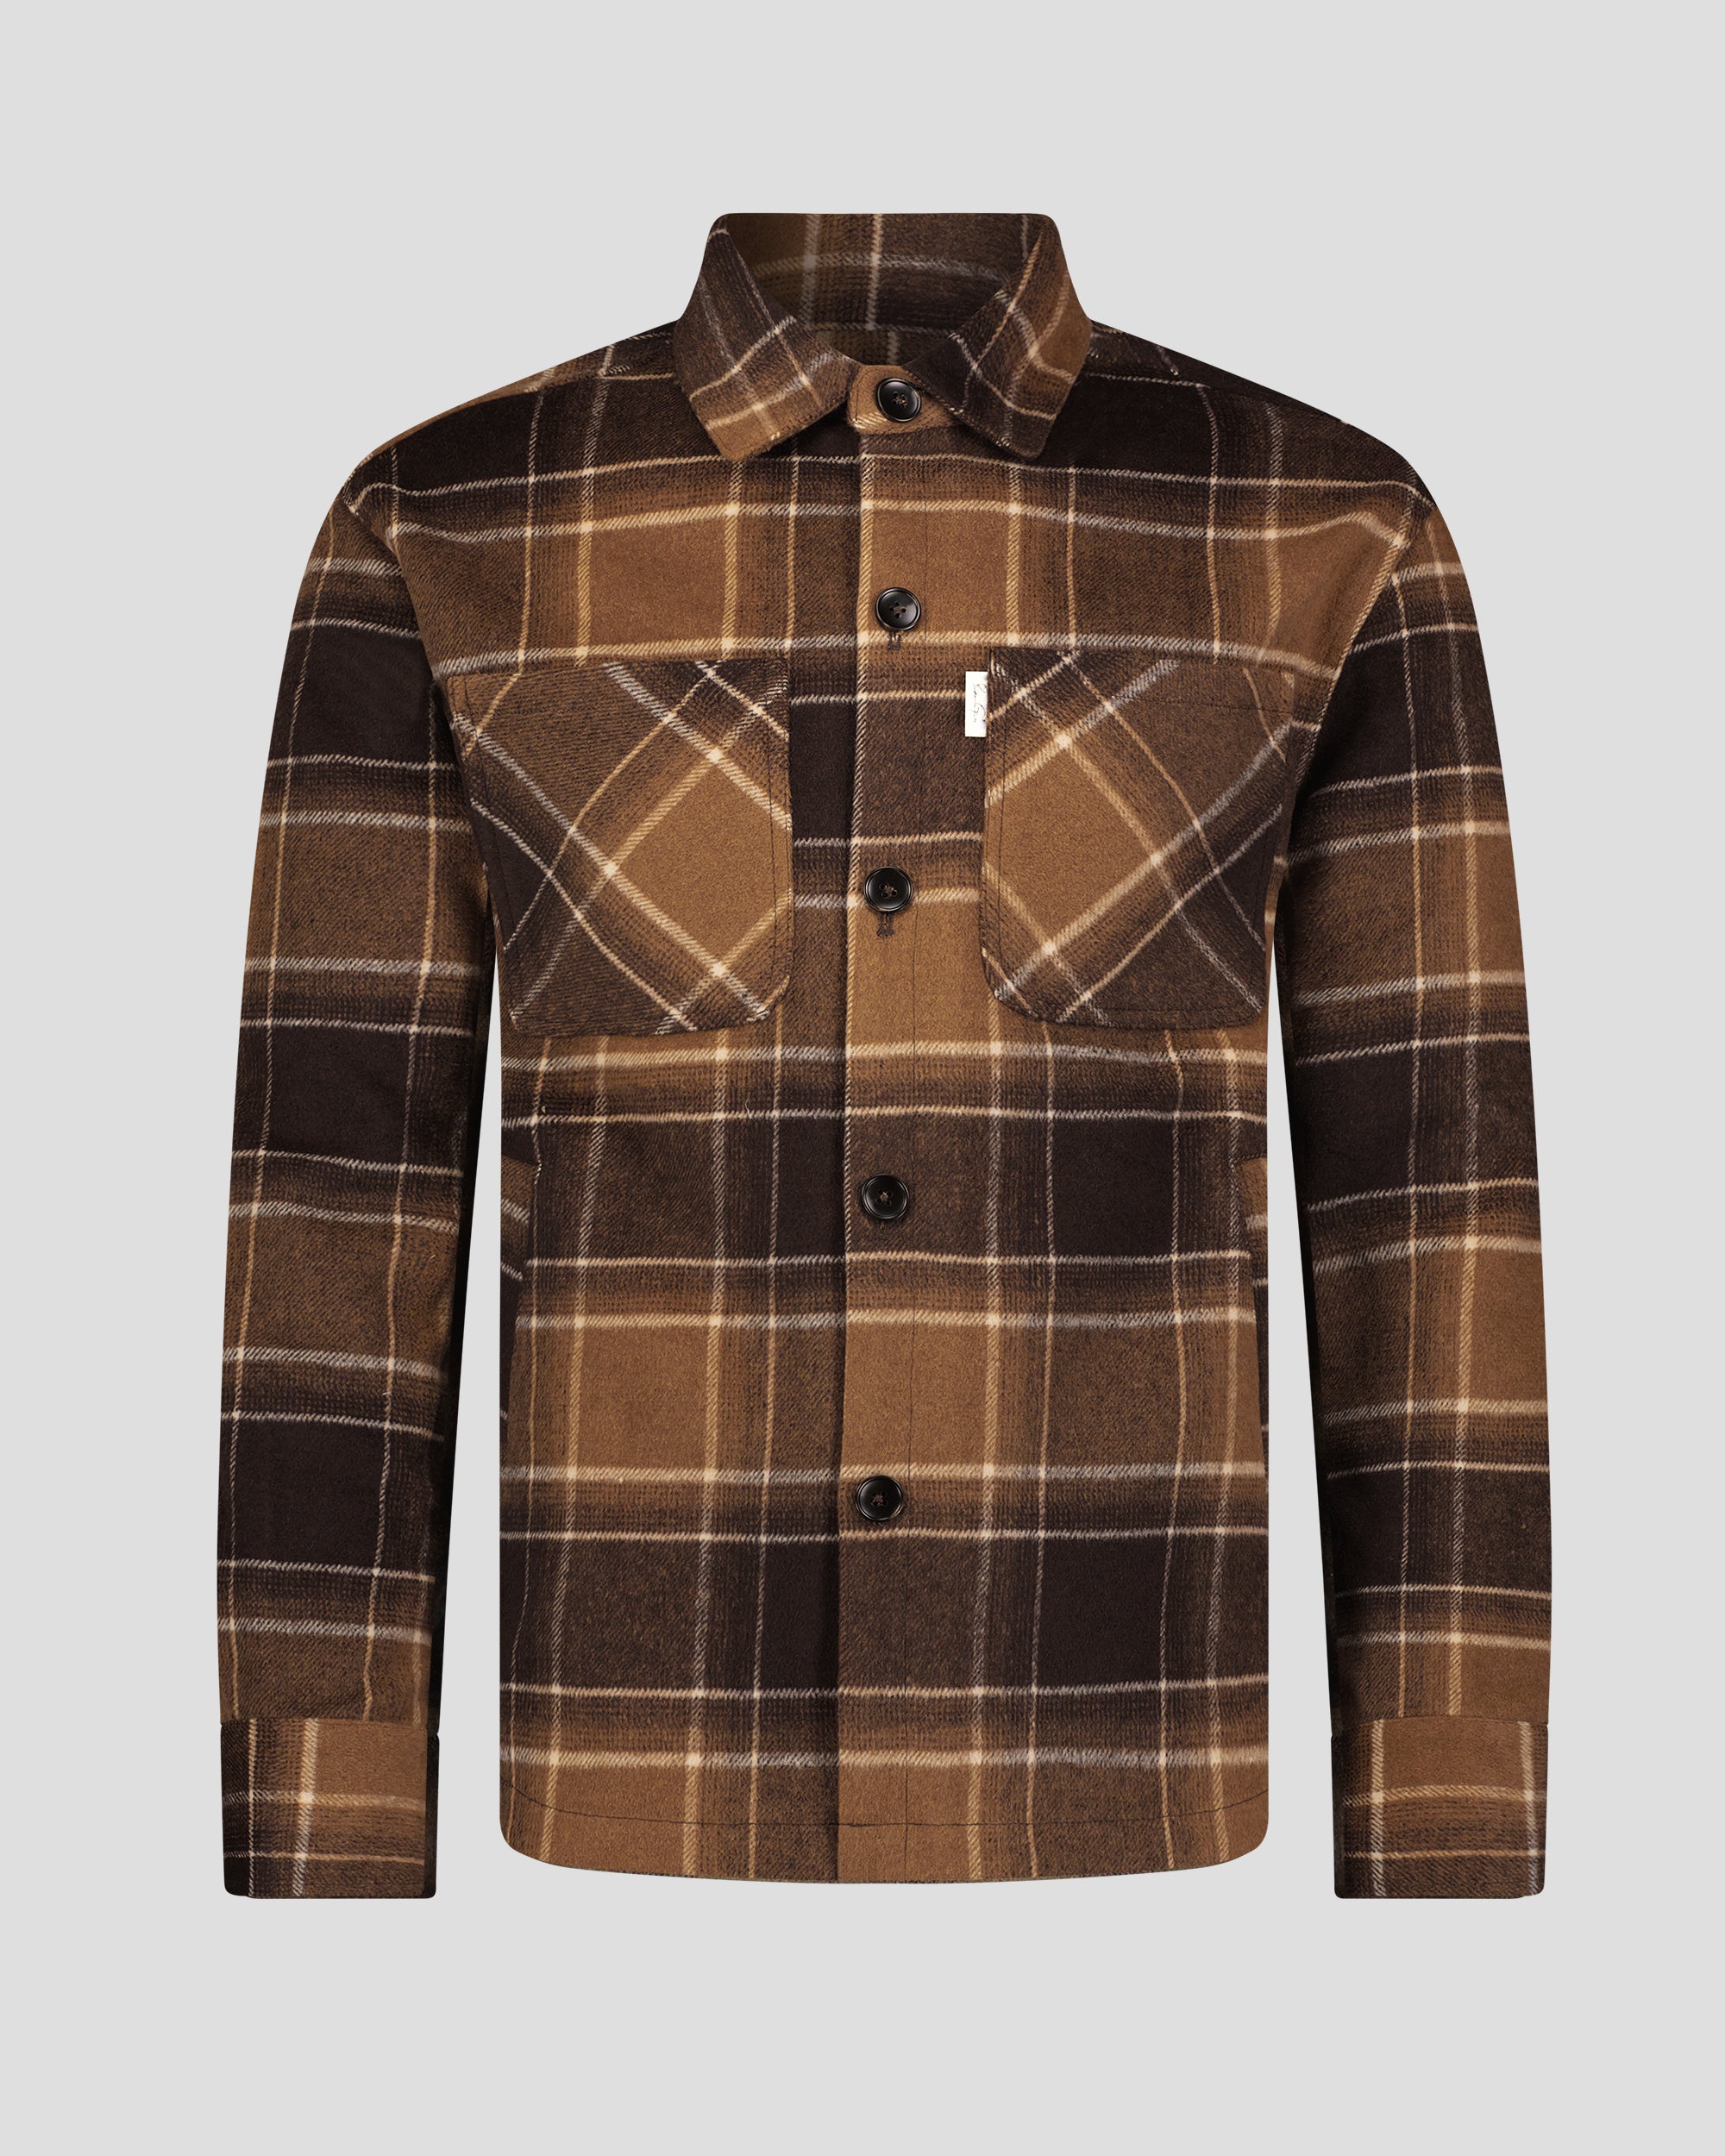 Men Plaid Lapel Fleece Lined T Shirt Jacket Coat Blouse Soft Flannel Casual  # | eBay